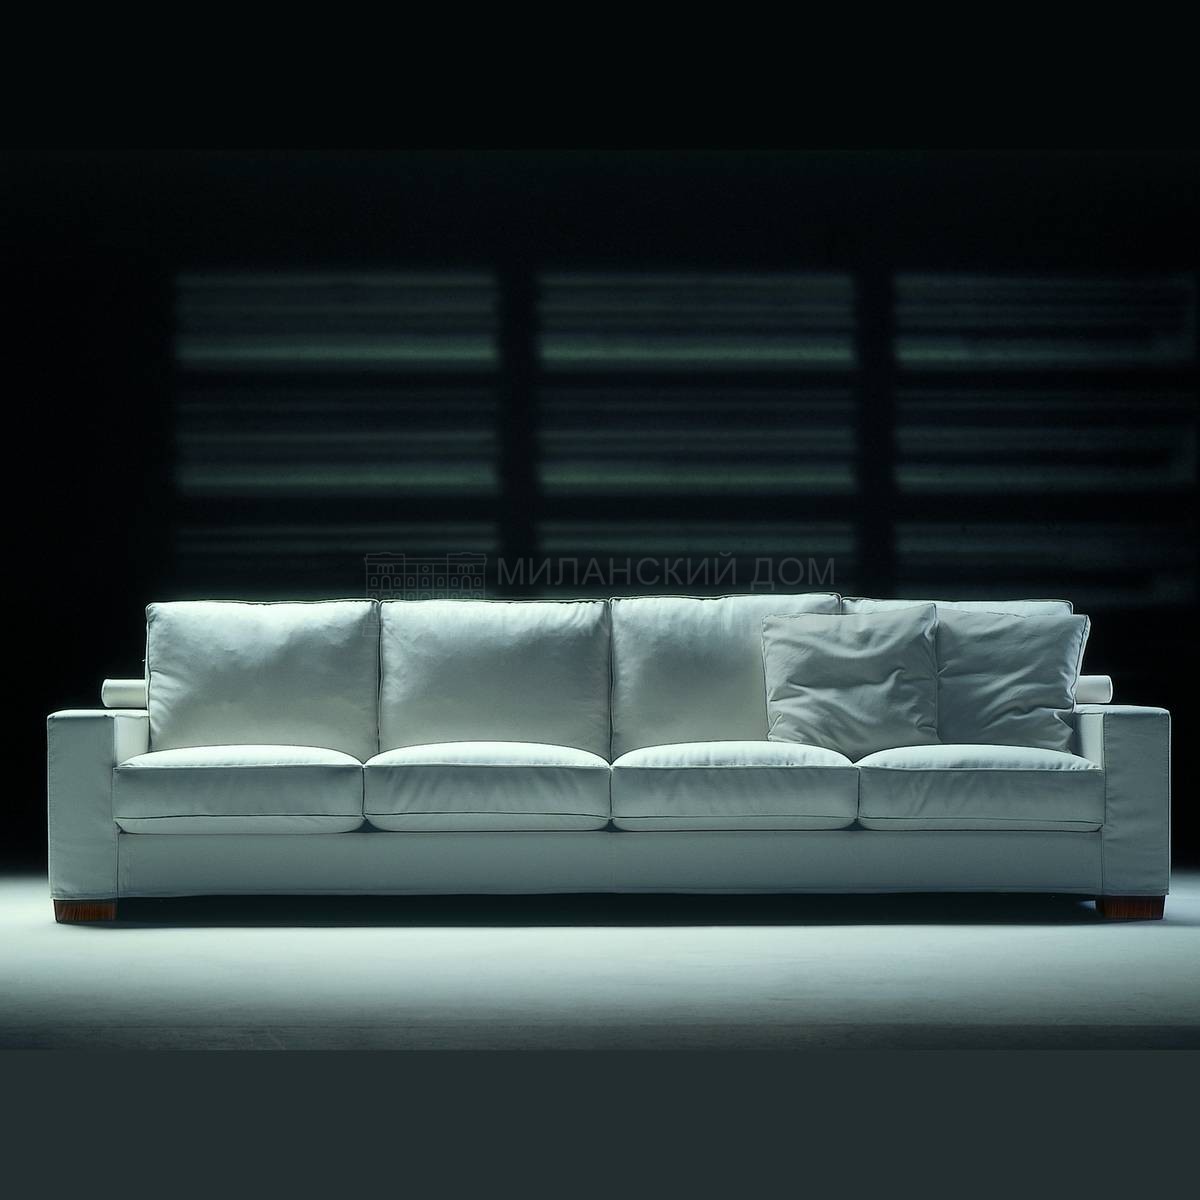 Прямой диван Status /sofa из Италии фабрики FLEXFORM